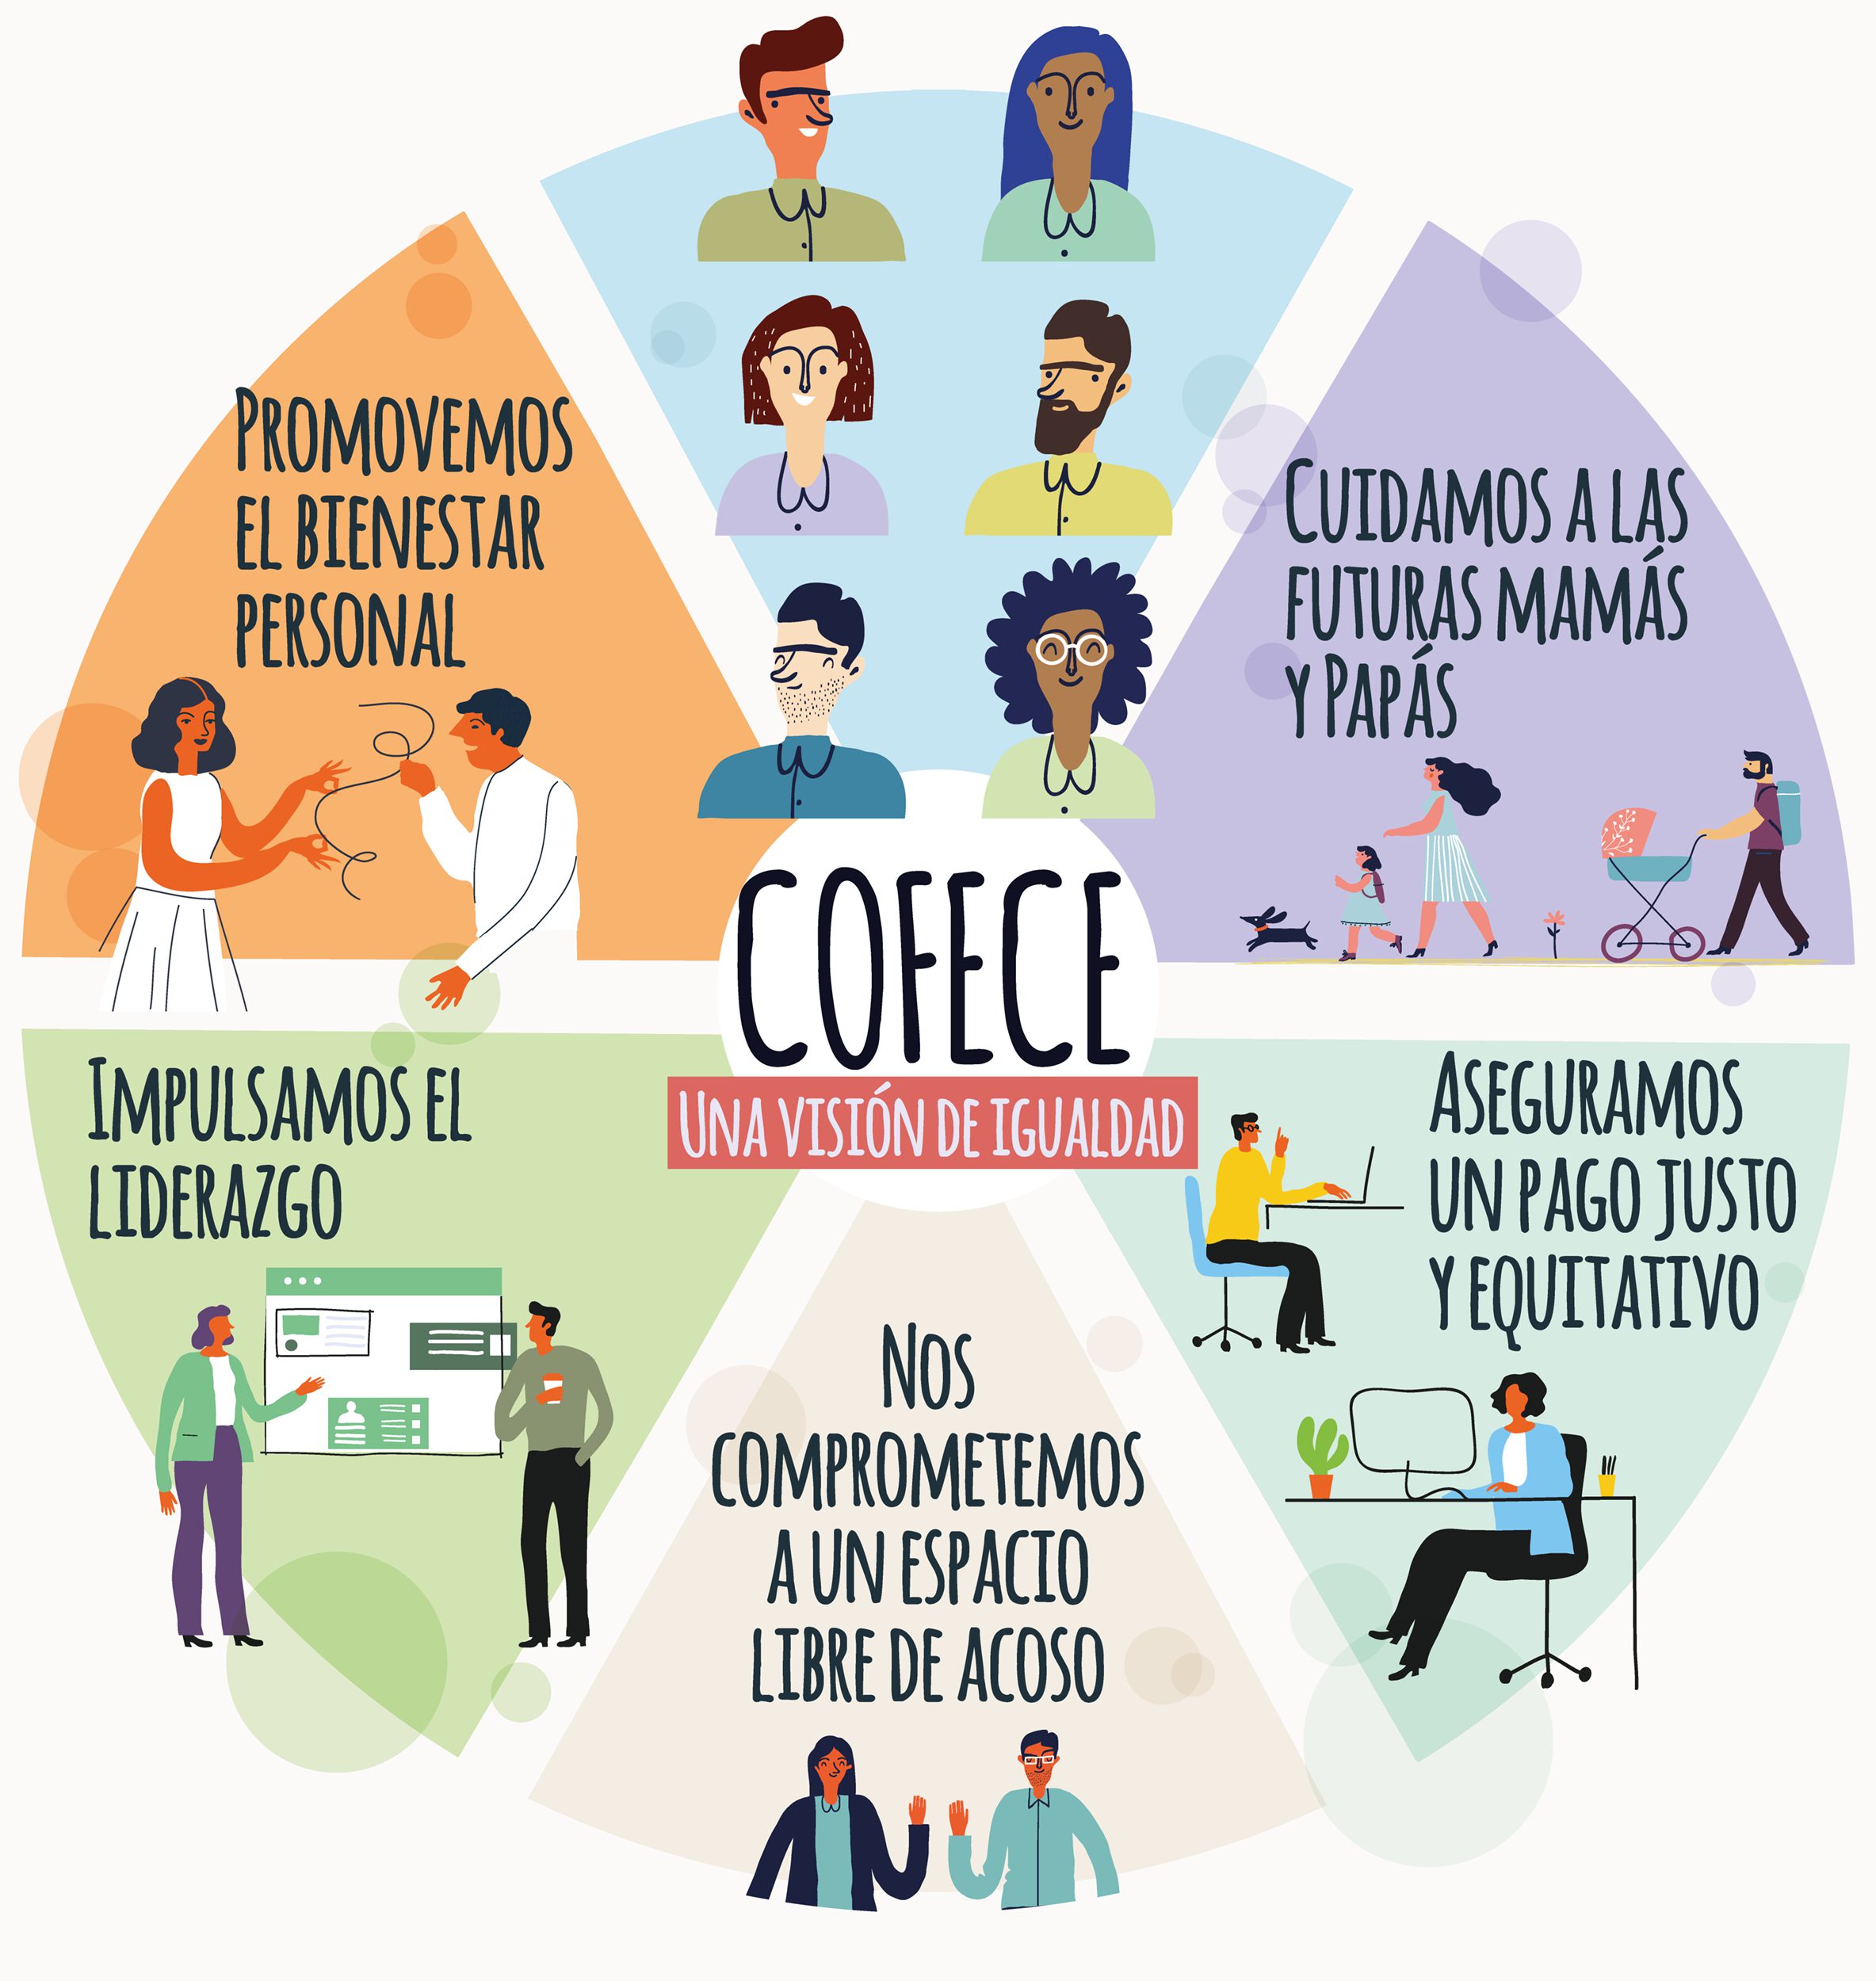 Infografía Cofece: Una visión de igualdad